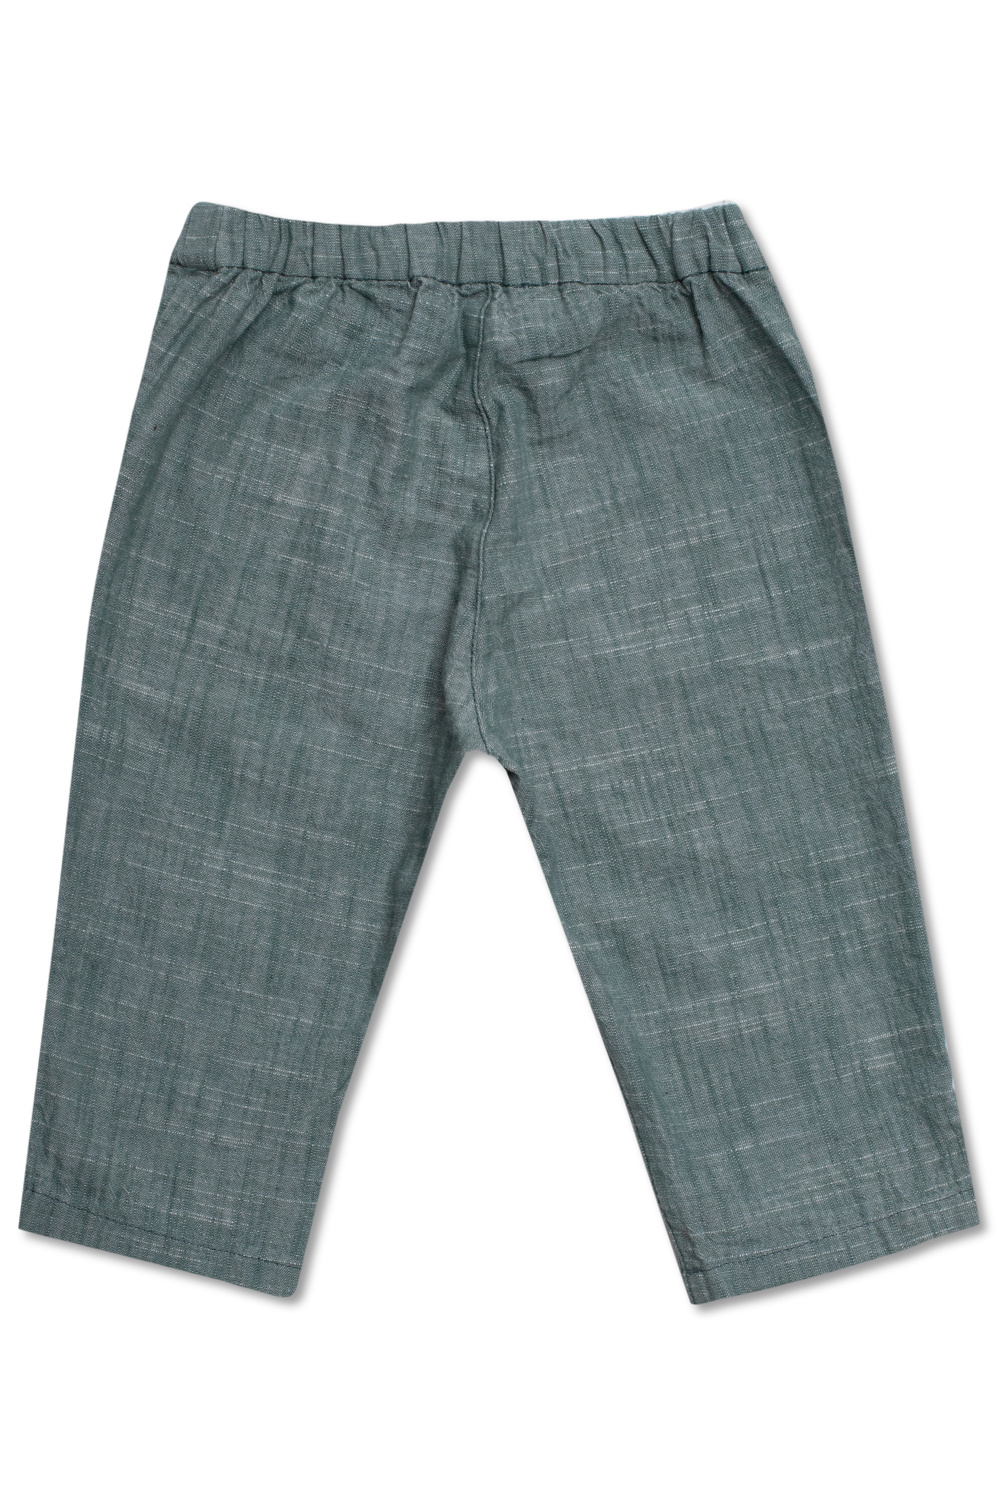 Bonpoint  Cotton trousers